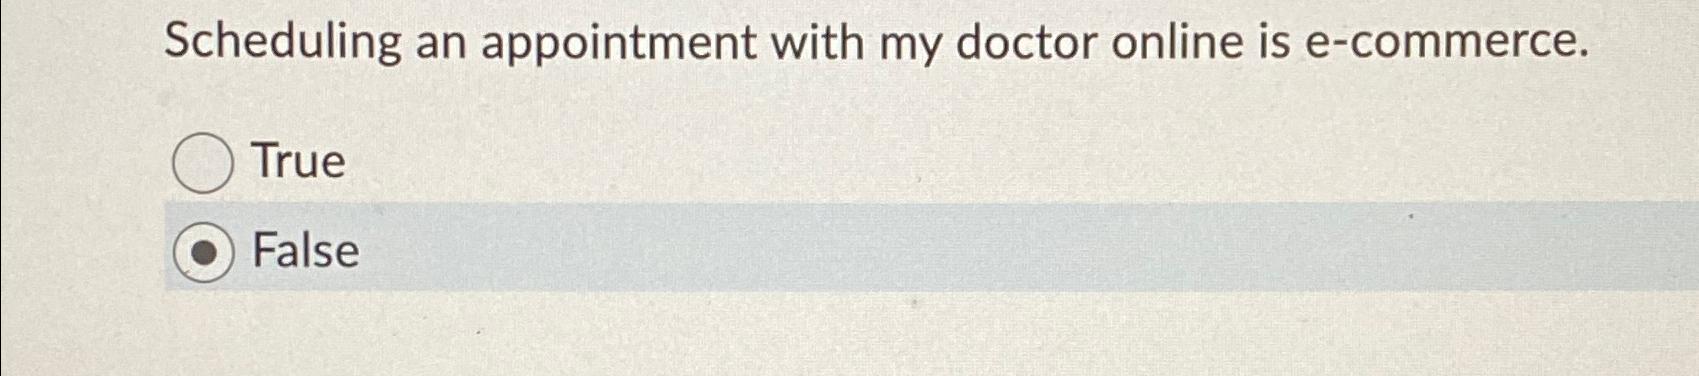 My Doctor Online